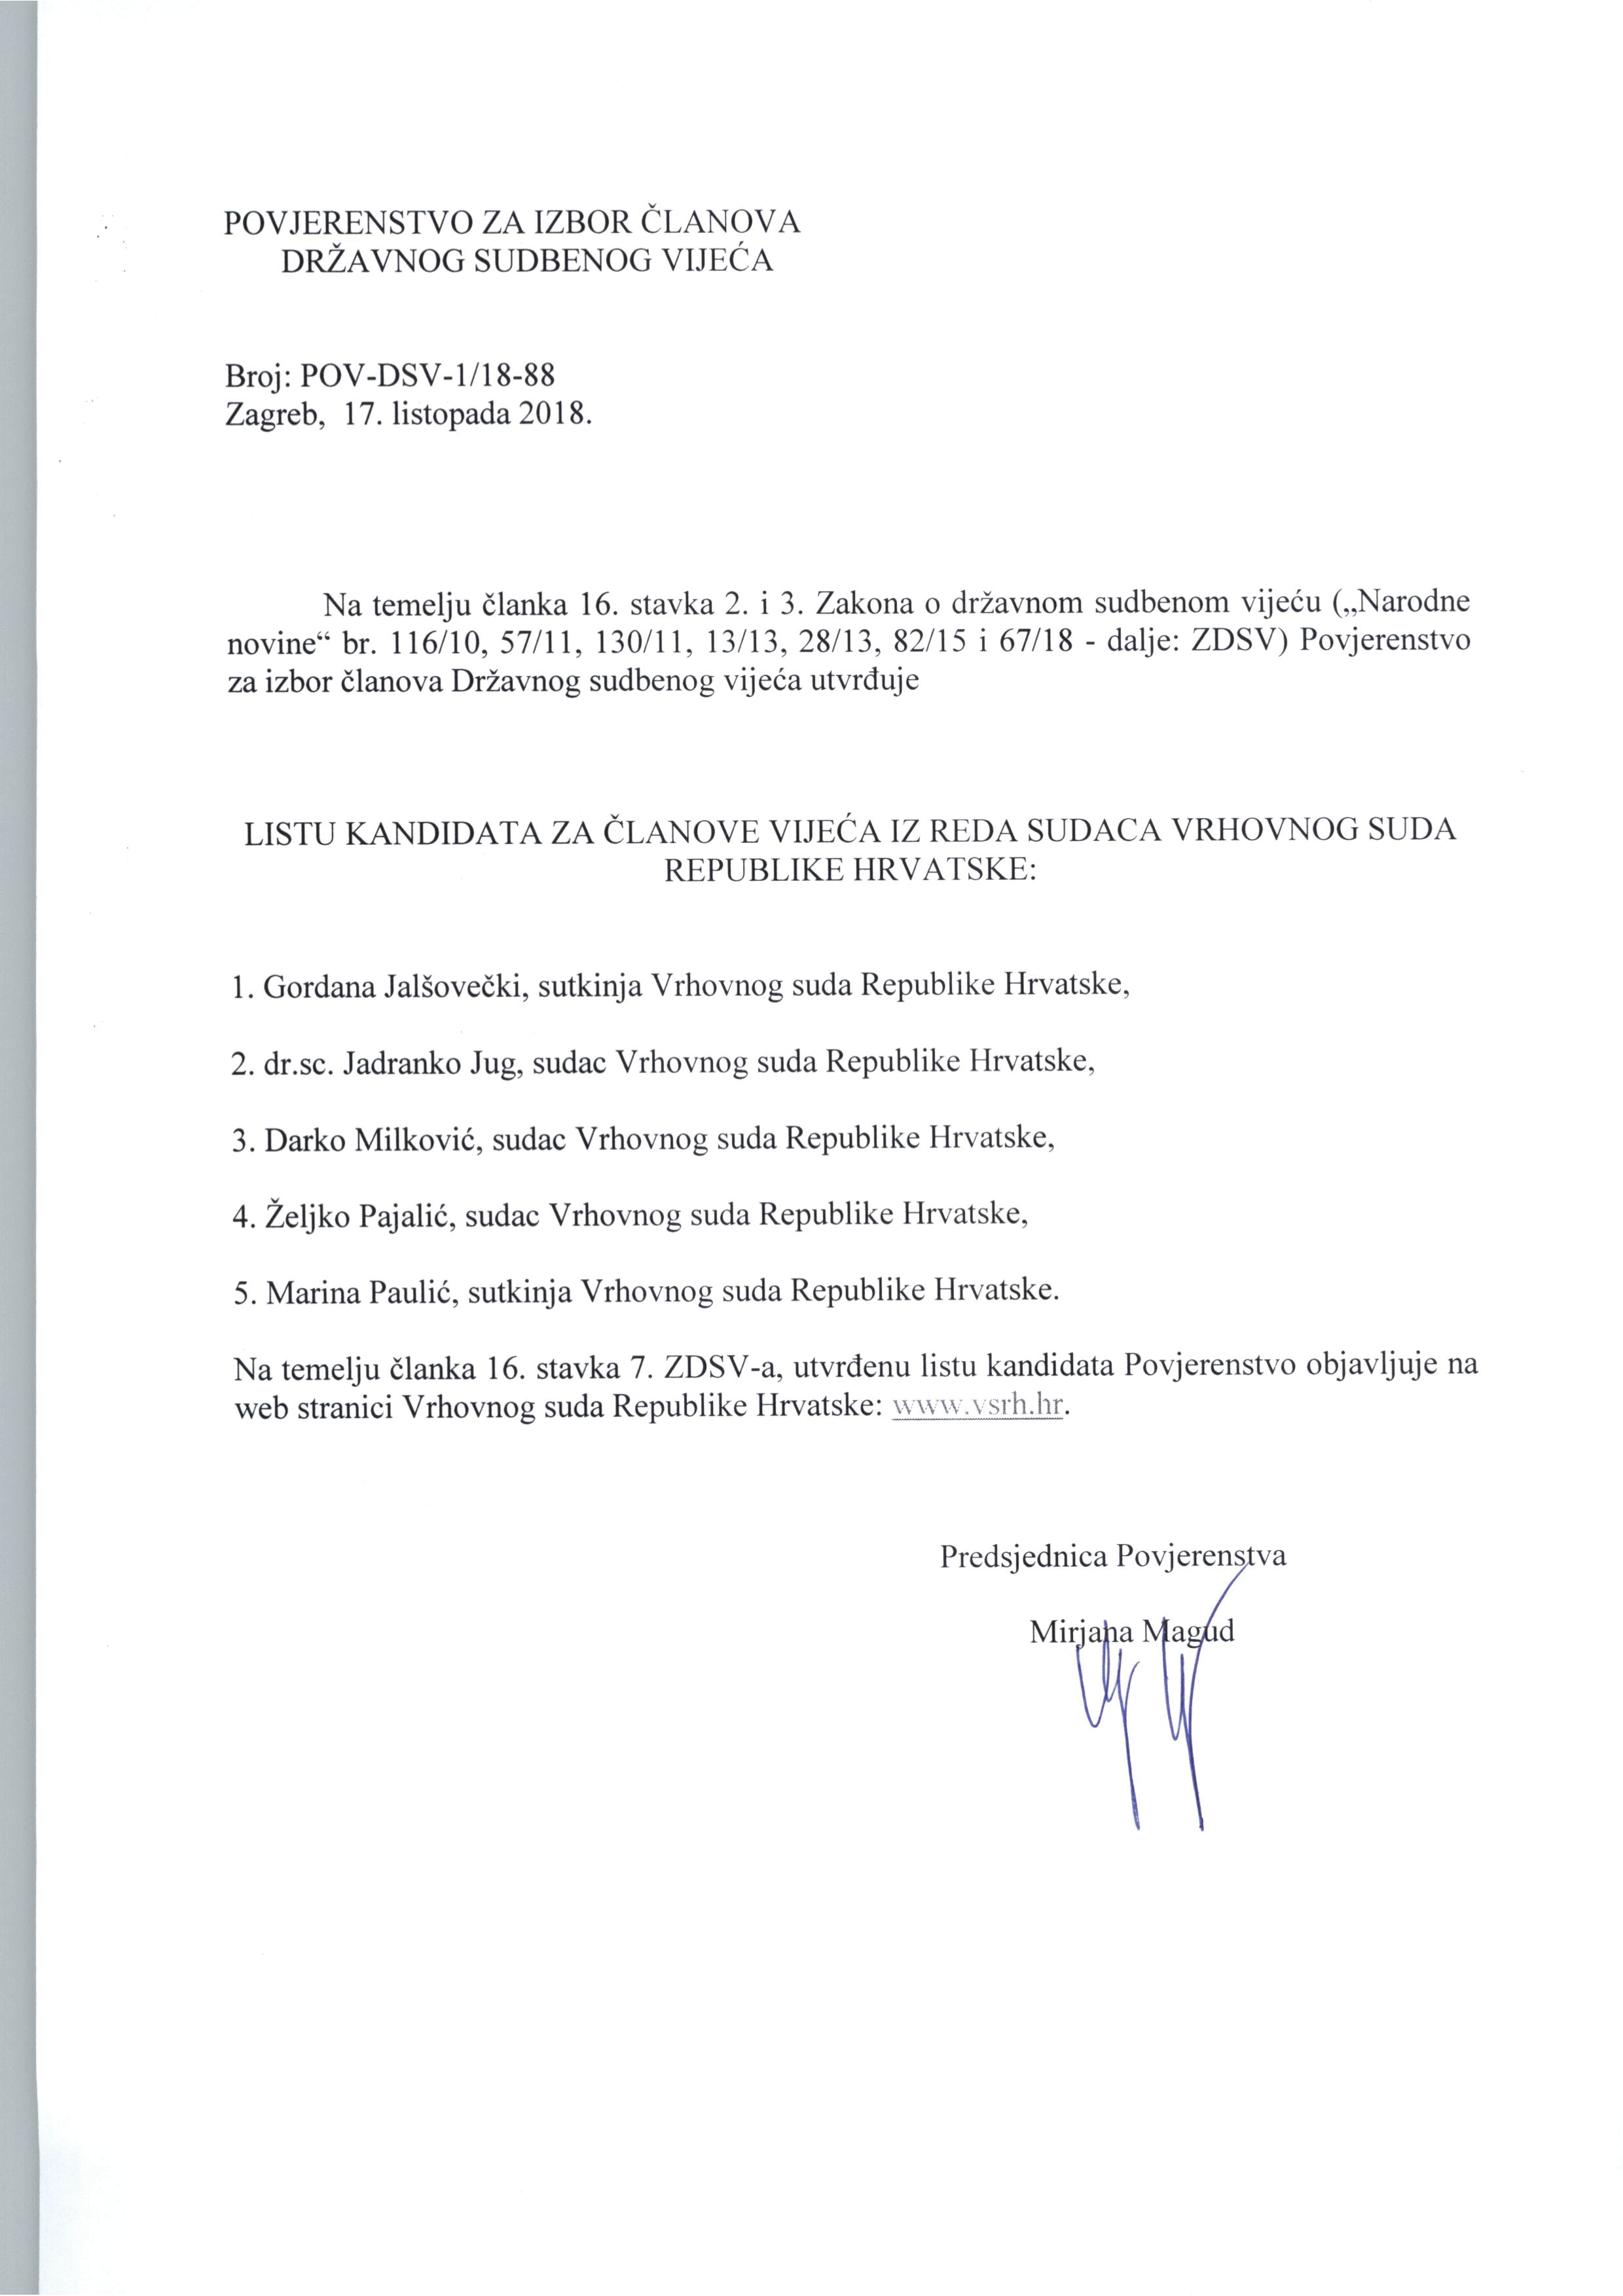 Povjerenstvo za izbor članova Državnog sudbenog vijeća objavilo je liste kandidata iz reda sudaca